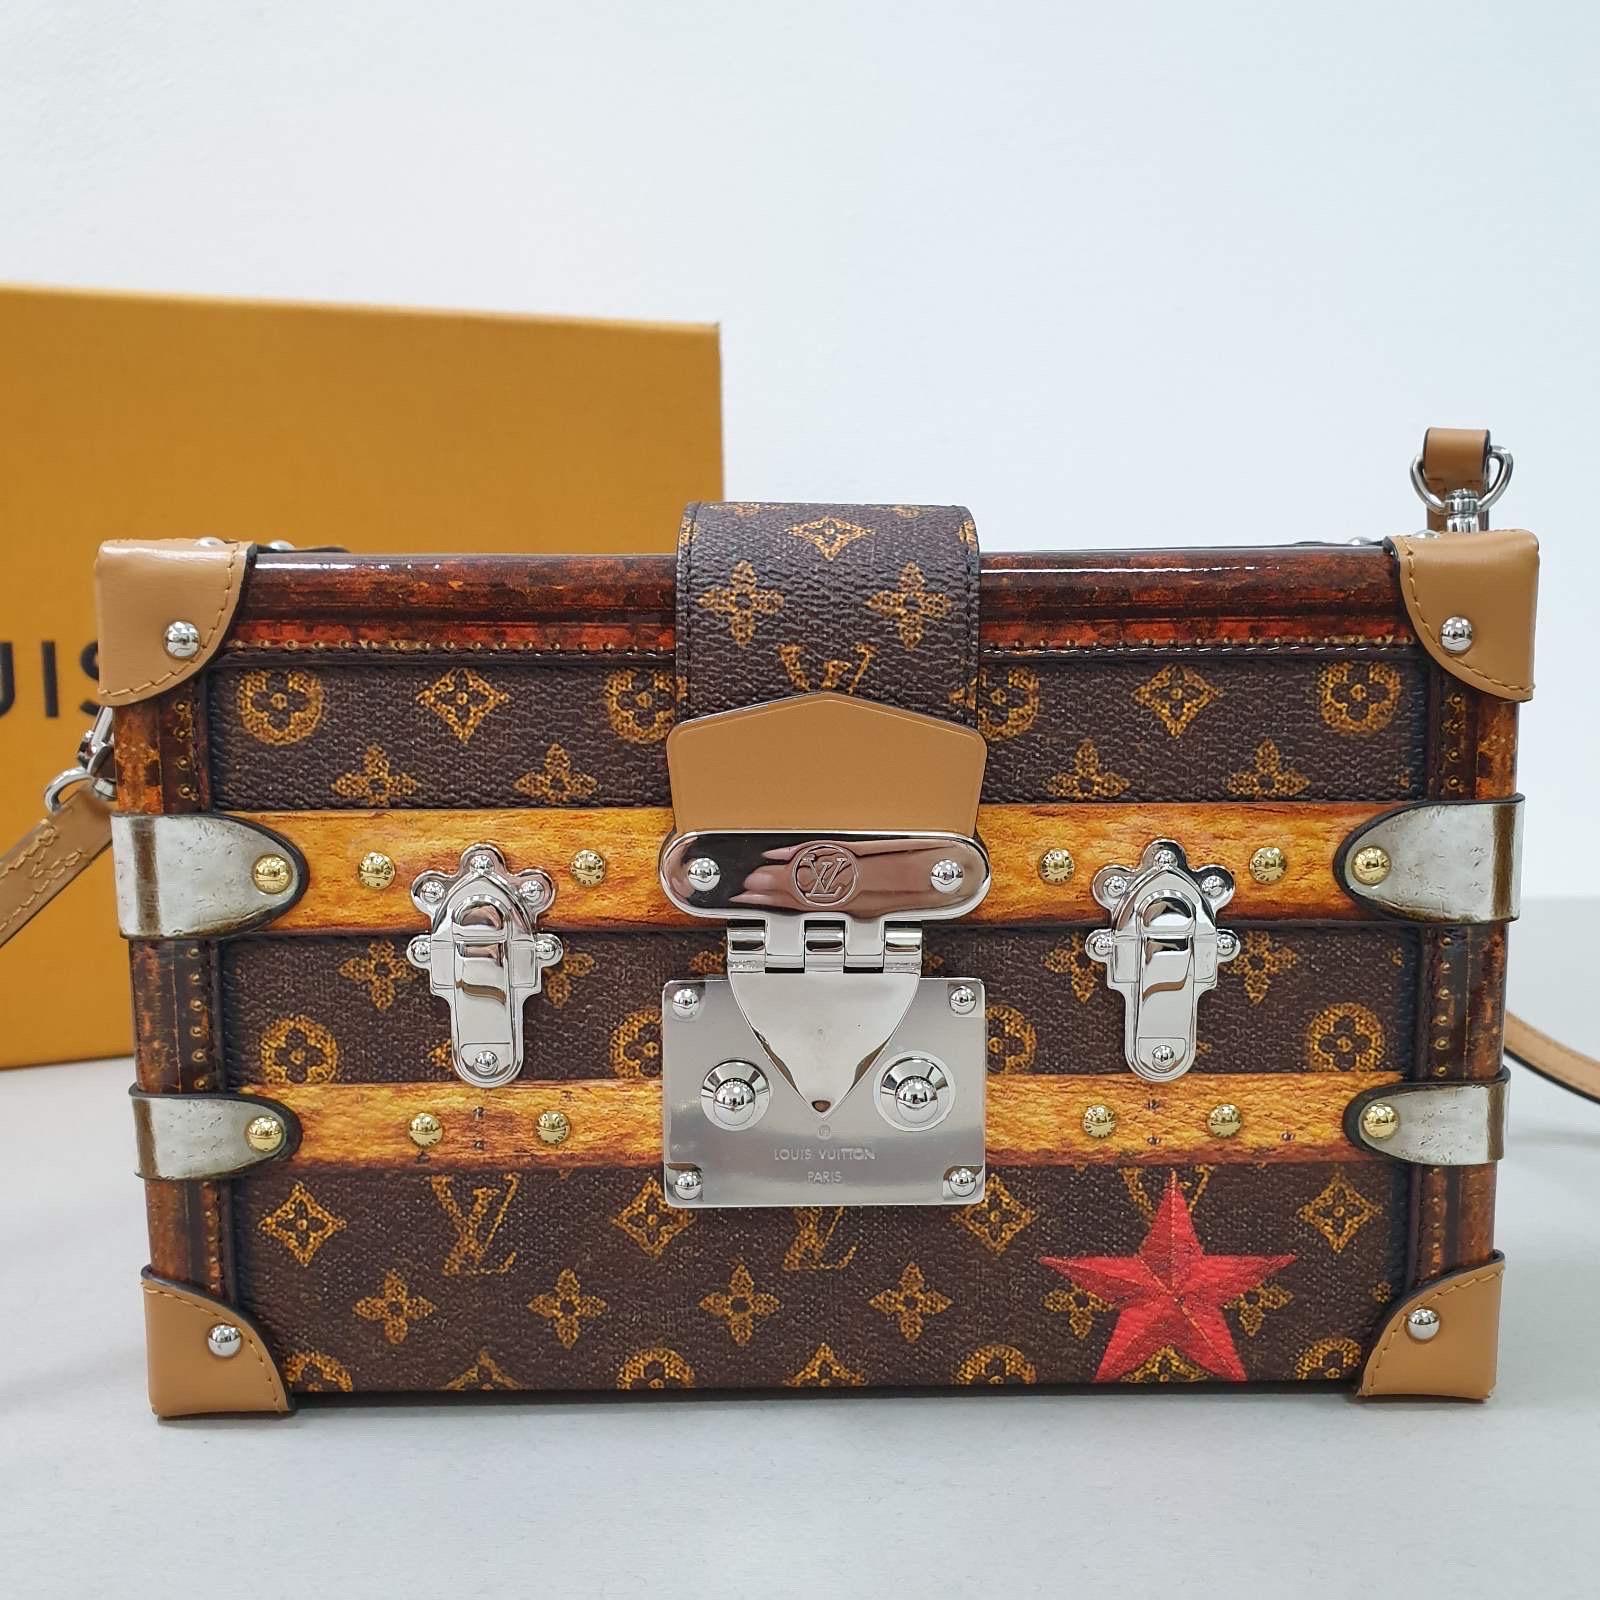 Jedes Detail der Petite Malle Handtasche ist von der Geschichte der Louis Vuitton Koffer inspiriert: die Form, das Monogram Reverse Canvas, das goldfarbene Schloss und die Beschläge - sogar das Schaffellfutter greift ein klassisches Motiv des Hauses